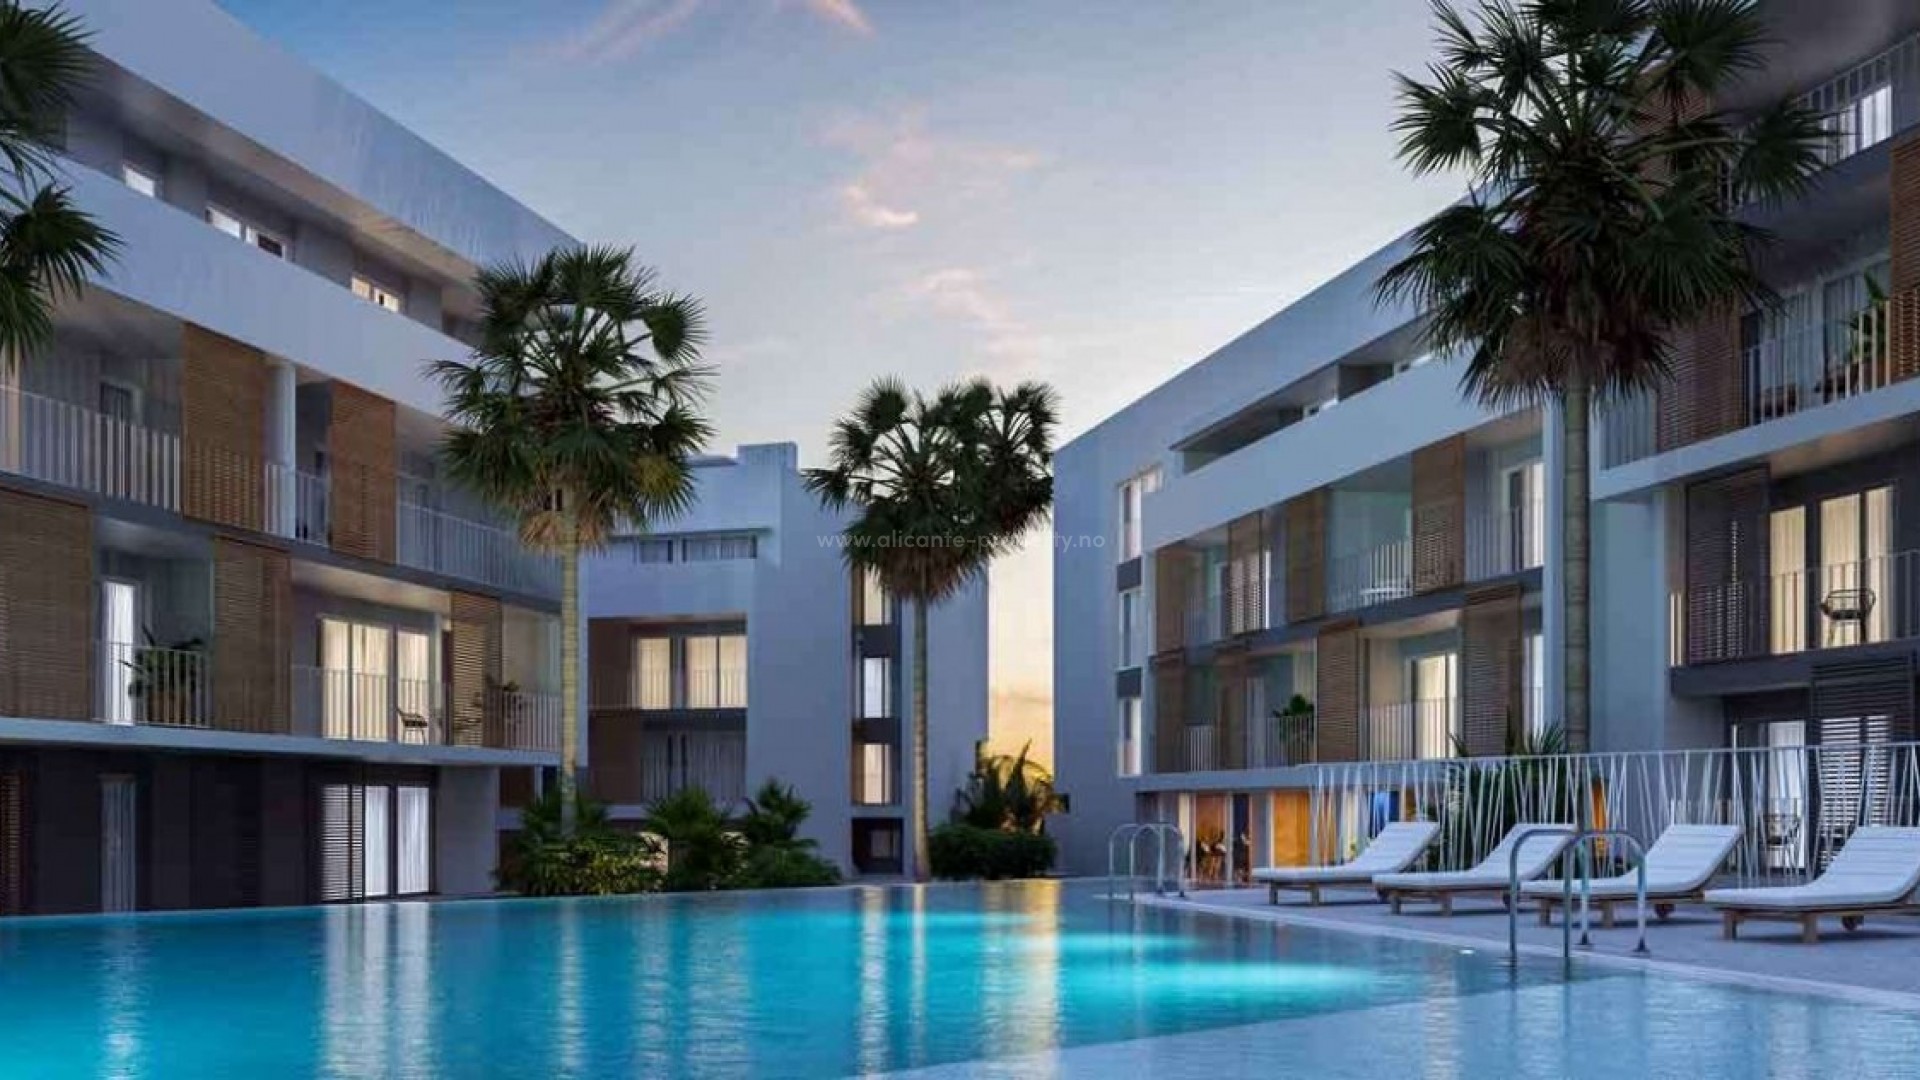 Nytt leilighets-kompleks i Javea/Xabia, 2, 3 og 4 soverom, forskjellige størrelser på terrasse, felles basseng. 5 minutter fra stranden, havnen og sentrum.